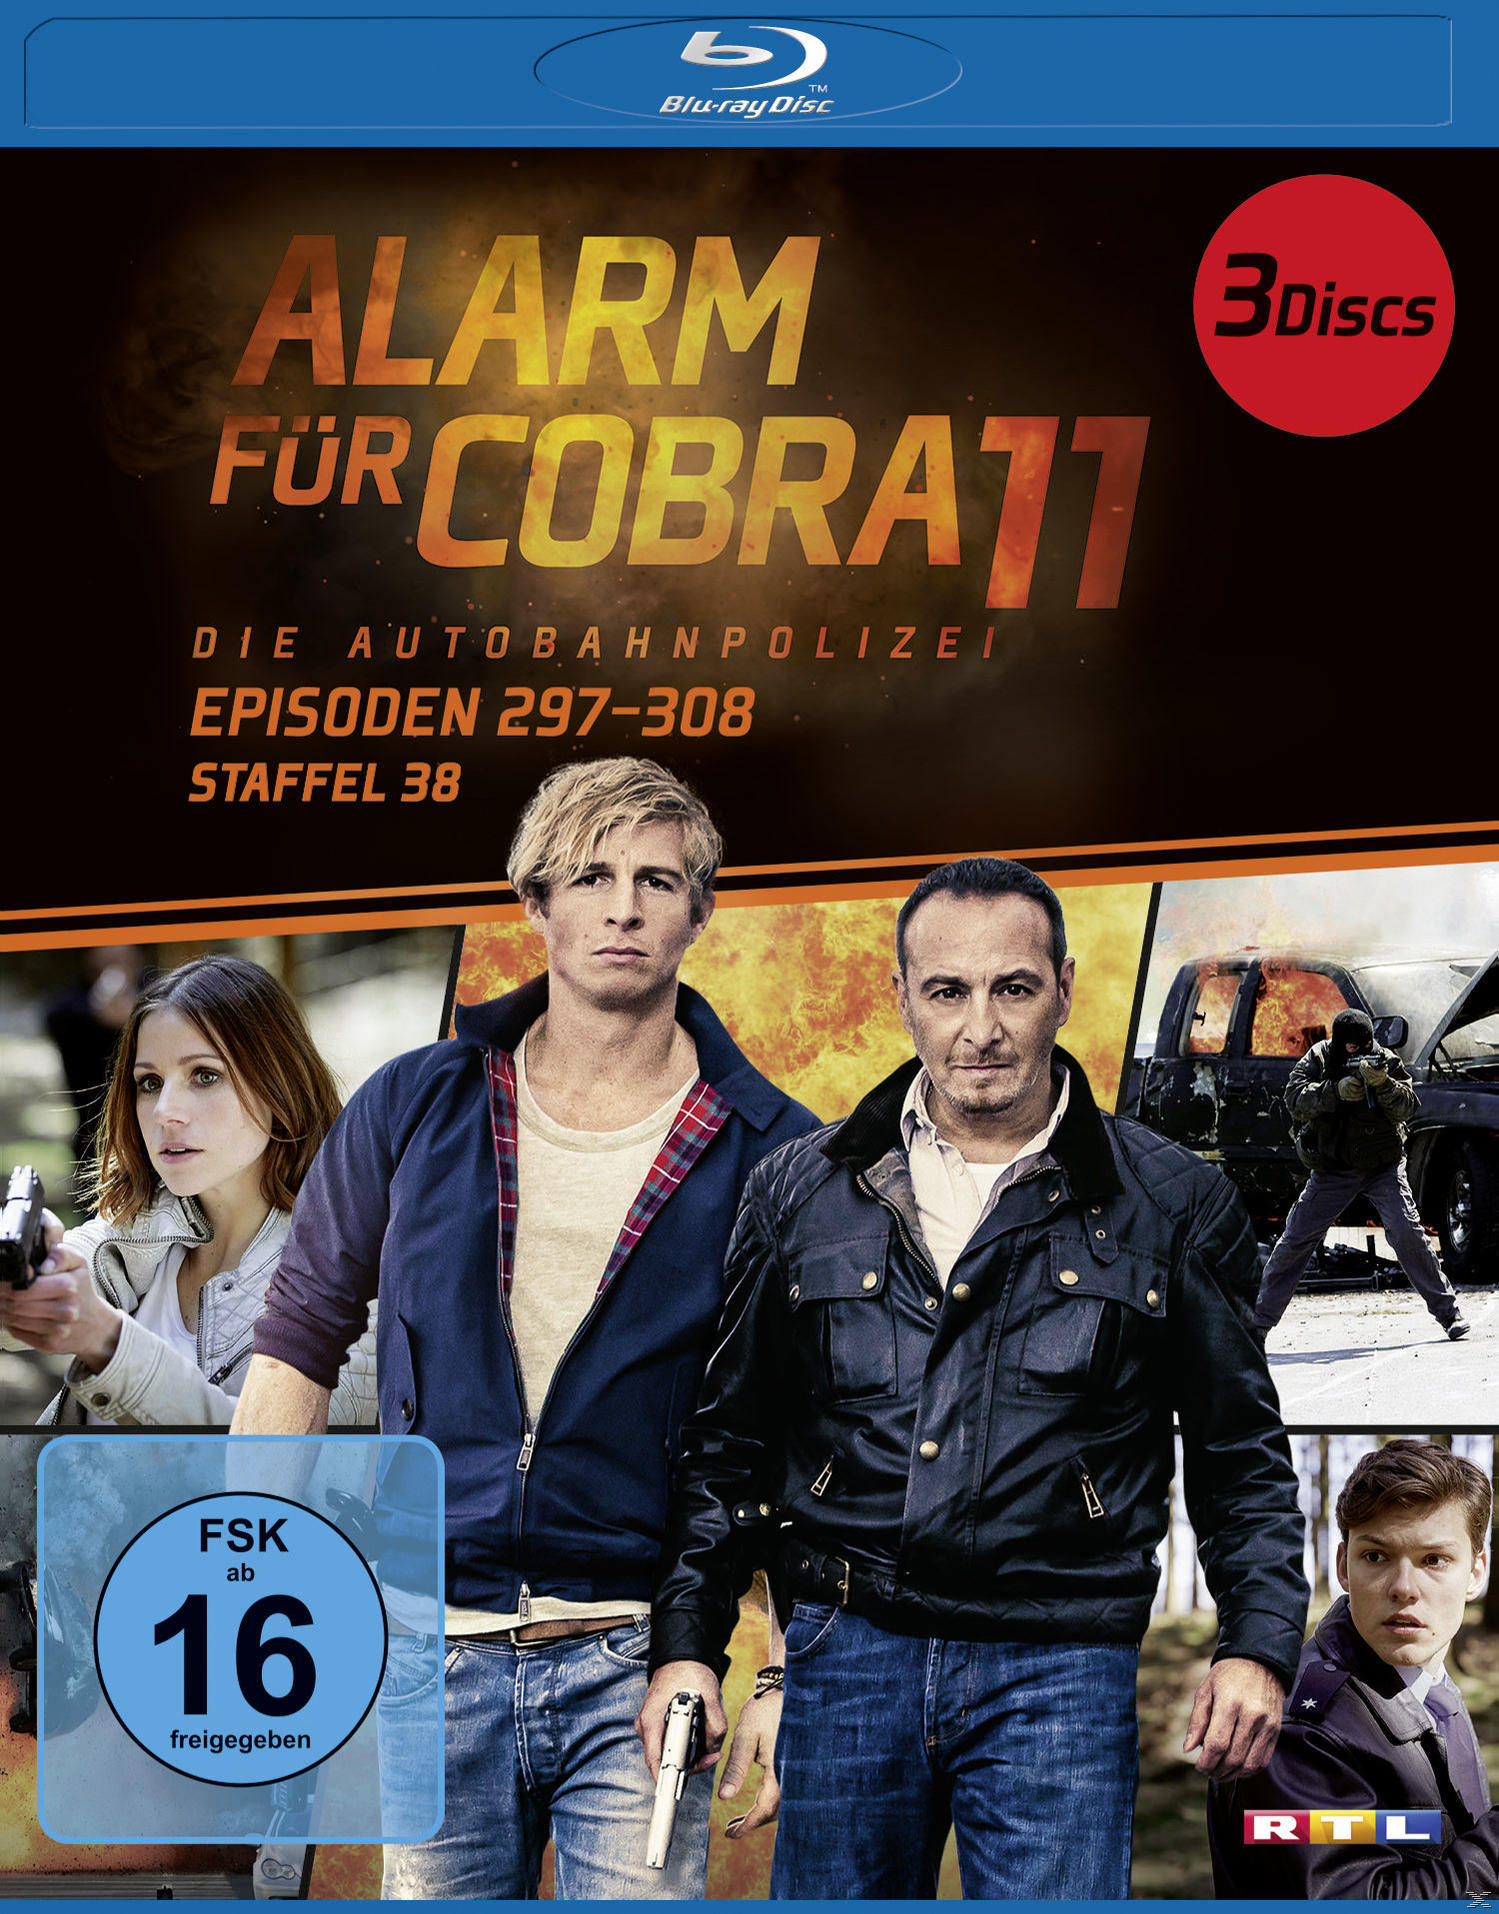 Alarm für Cobra 11 Blu-ray - 38 Staffel